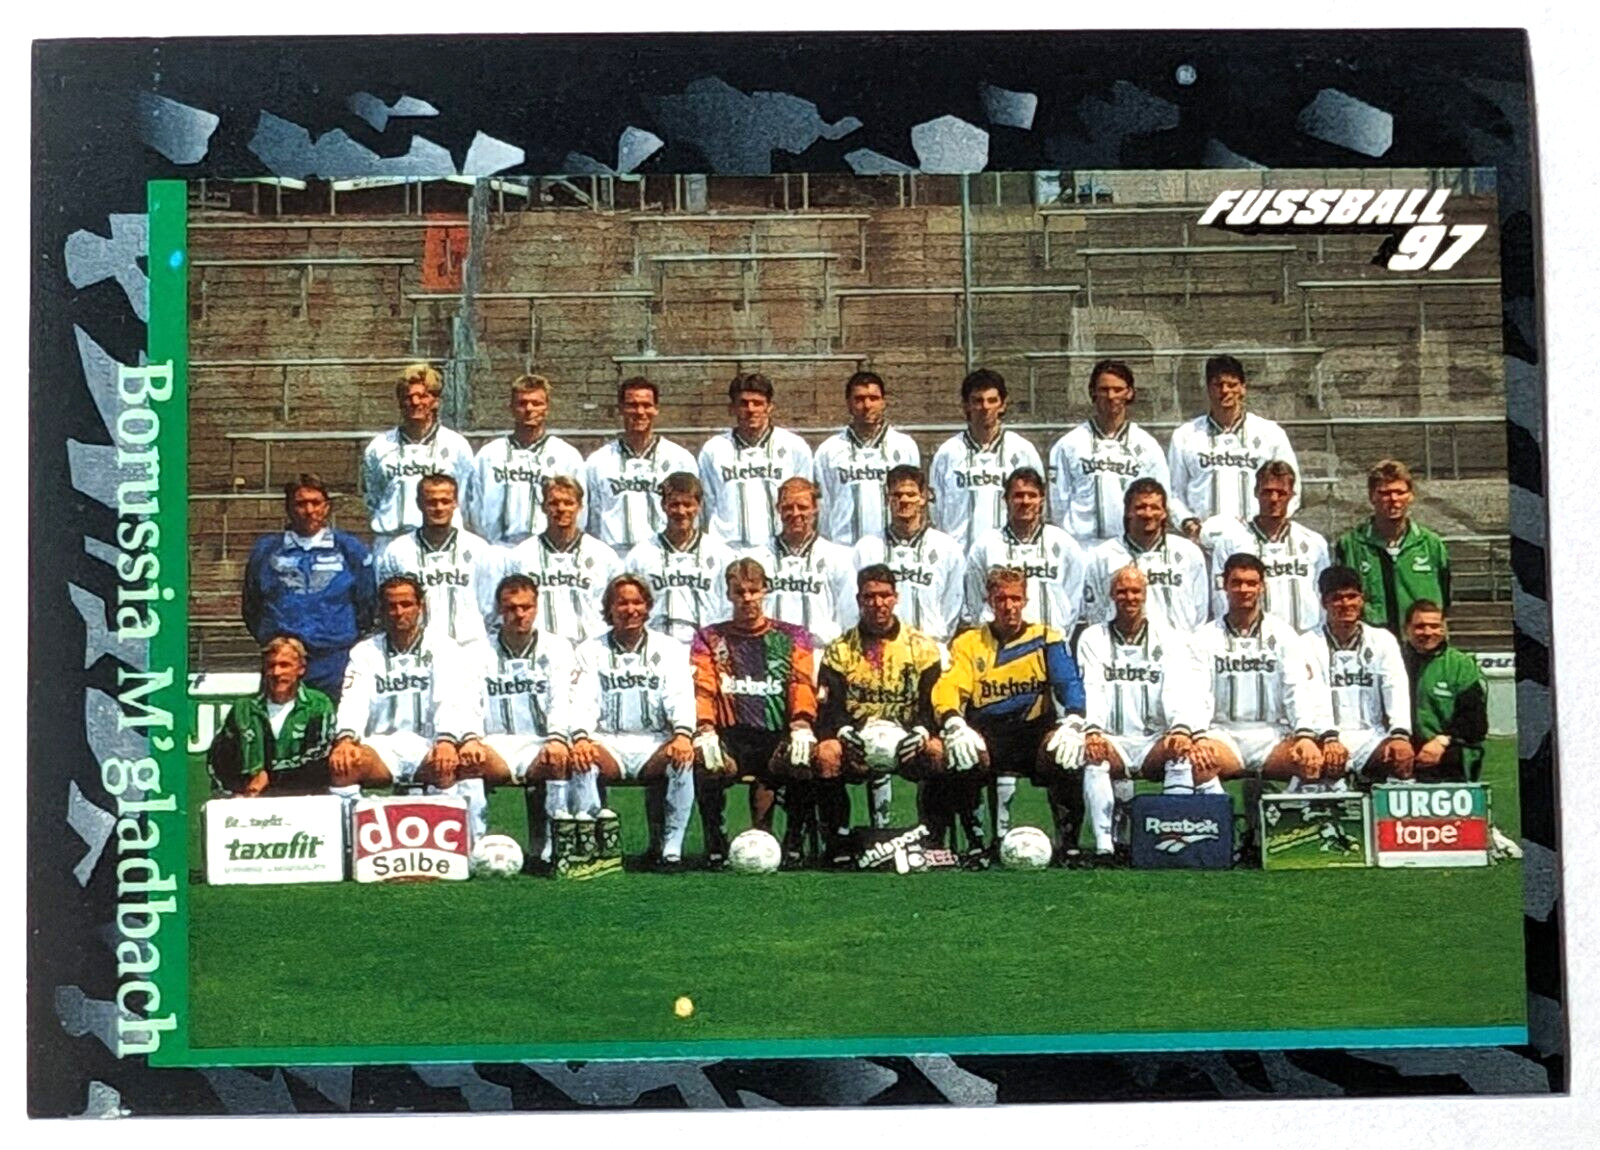 BORUSSIA MÖNCHENGLADBACH  Panini football 97 team team eleven stickers picture